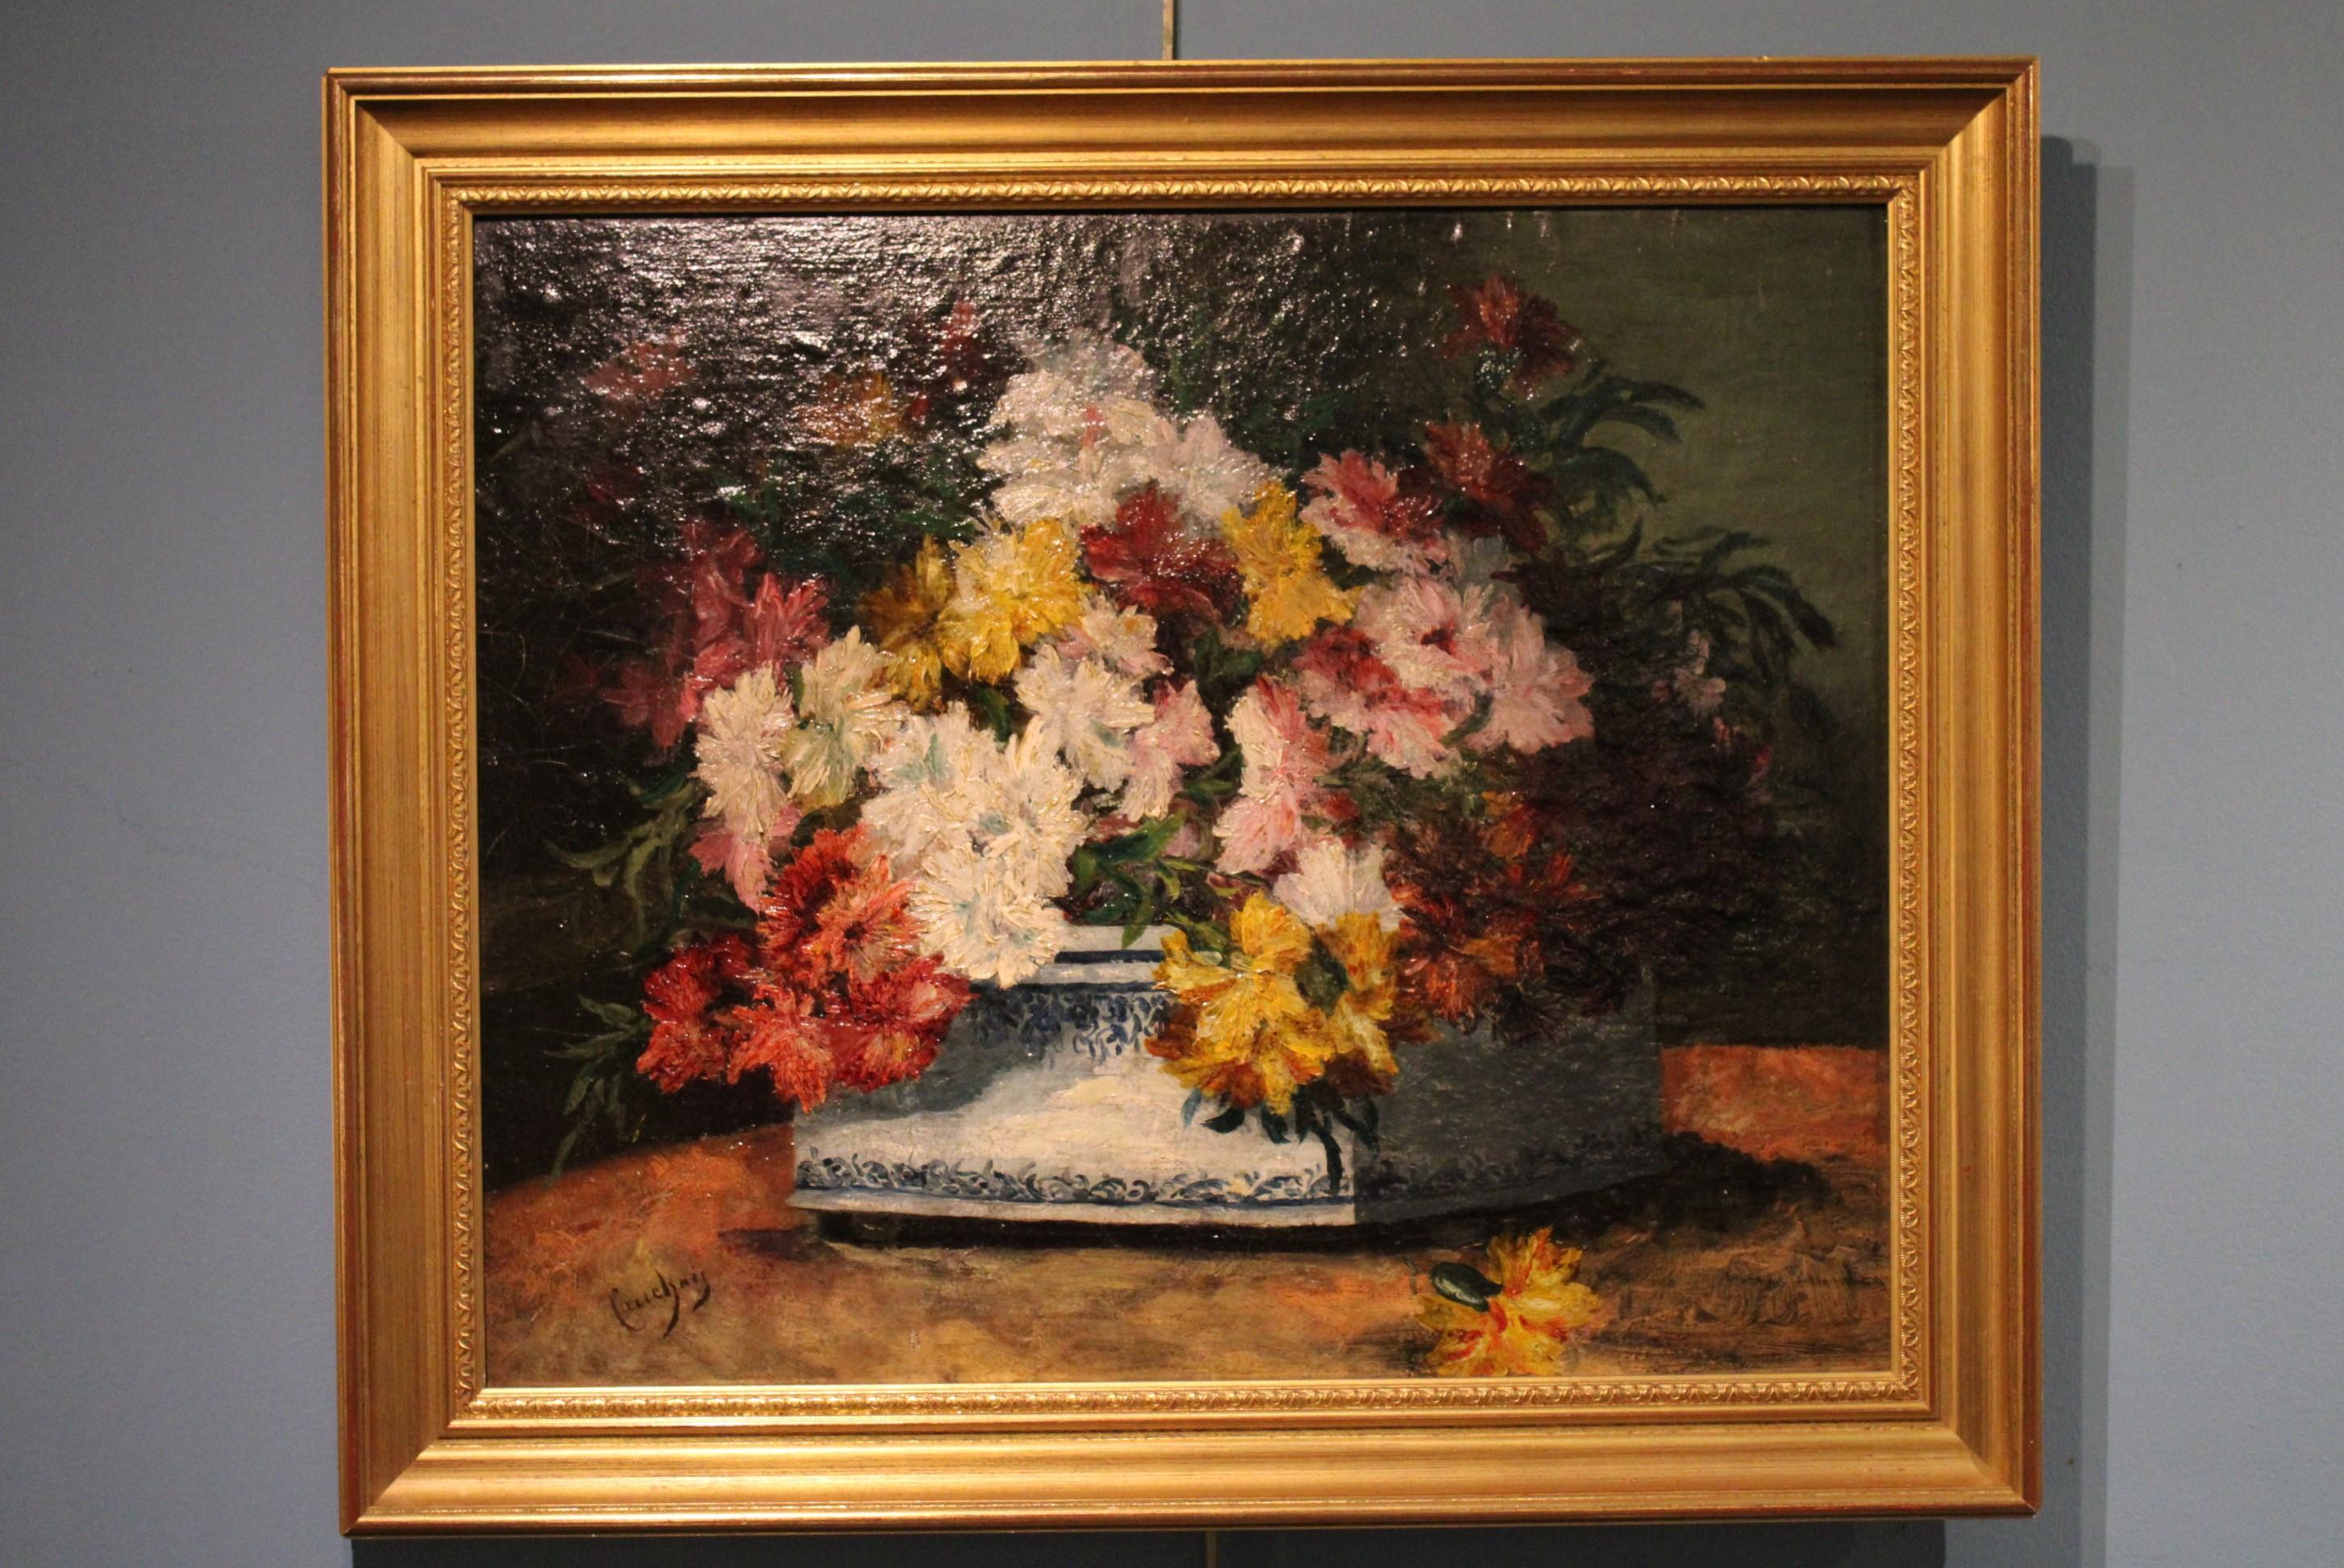 Korb mit Blumen, Gemälde von Eugène Henri Cauchois (französischer Maler, 1850-1911). 
Öl auf Platte, signiert.
 Eugène Henri Cauchois ist ein Genremaler, der Landschaften, Seestücke und Stillleben malt.
Seine Werke werden in französischen Museen